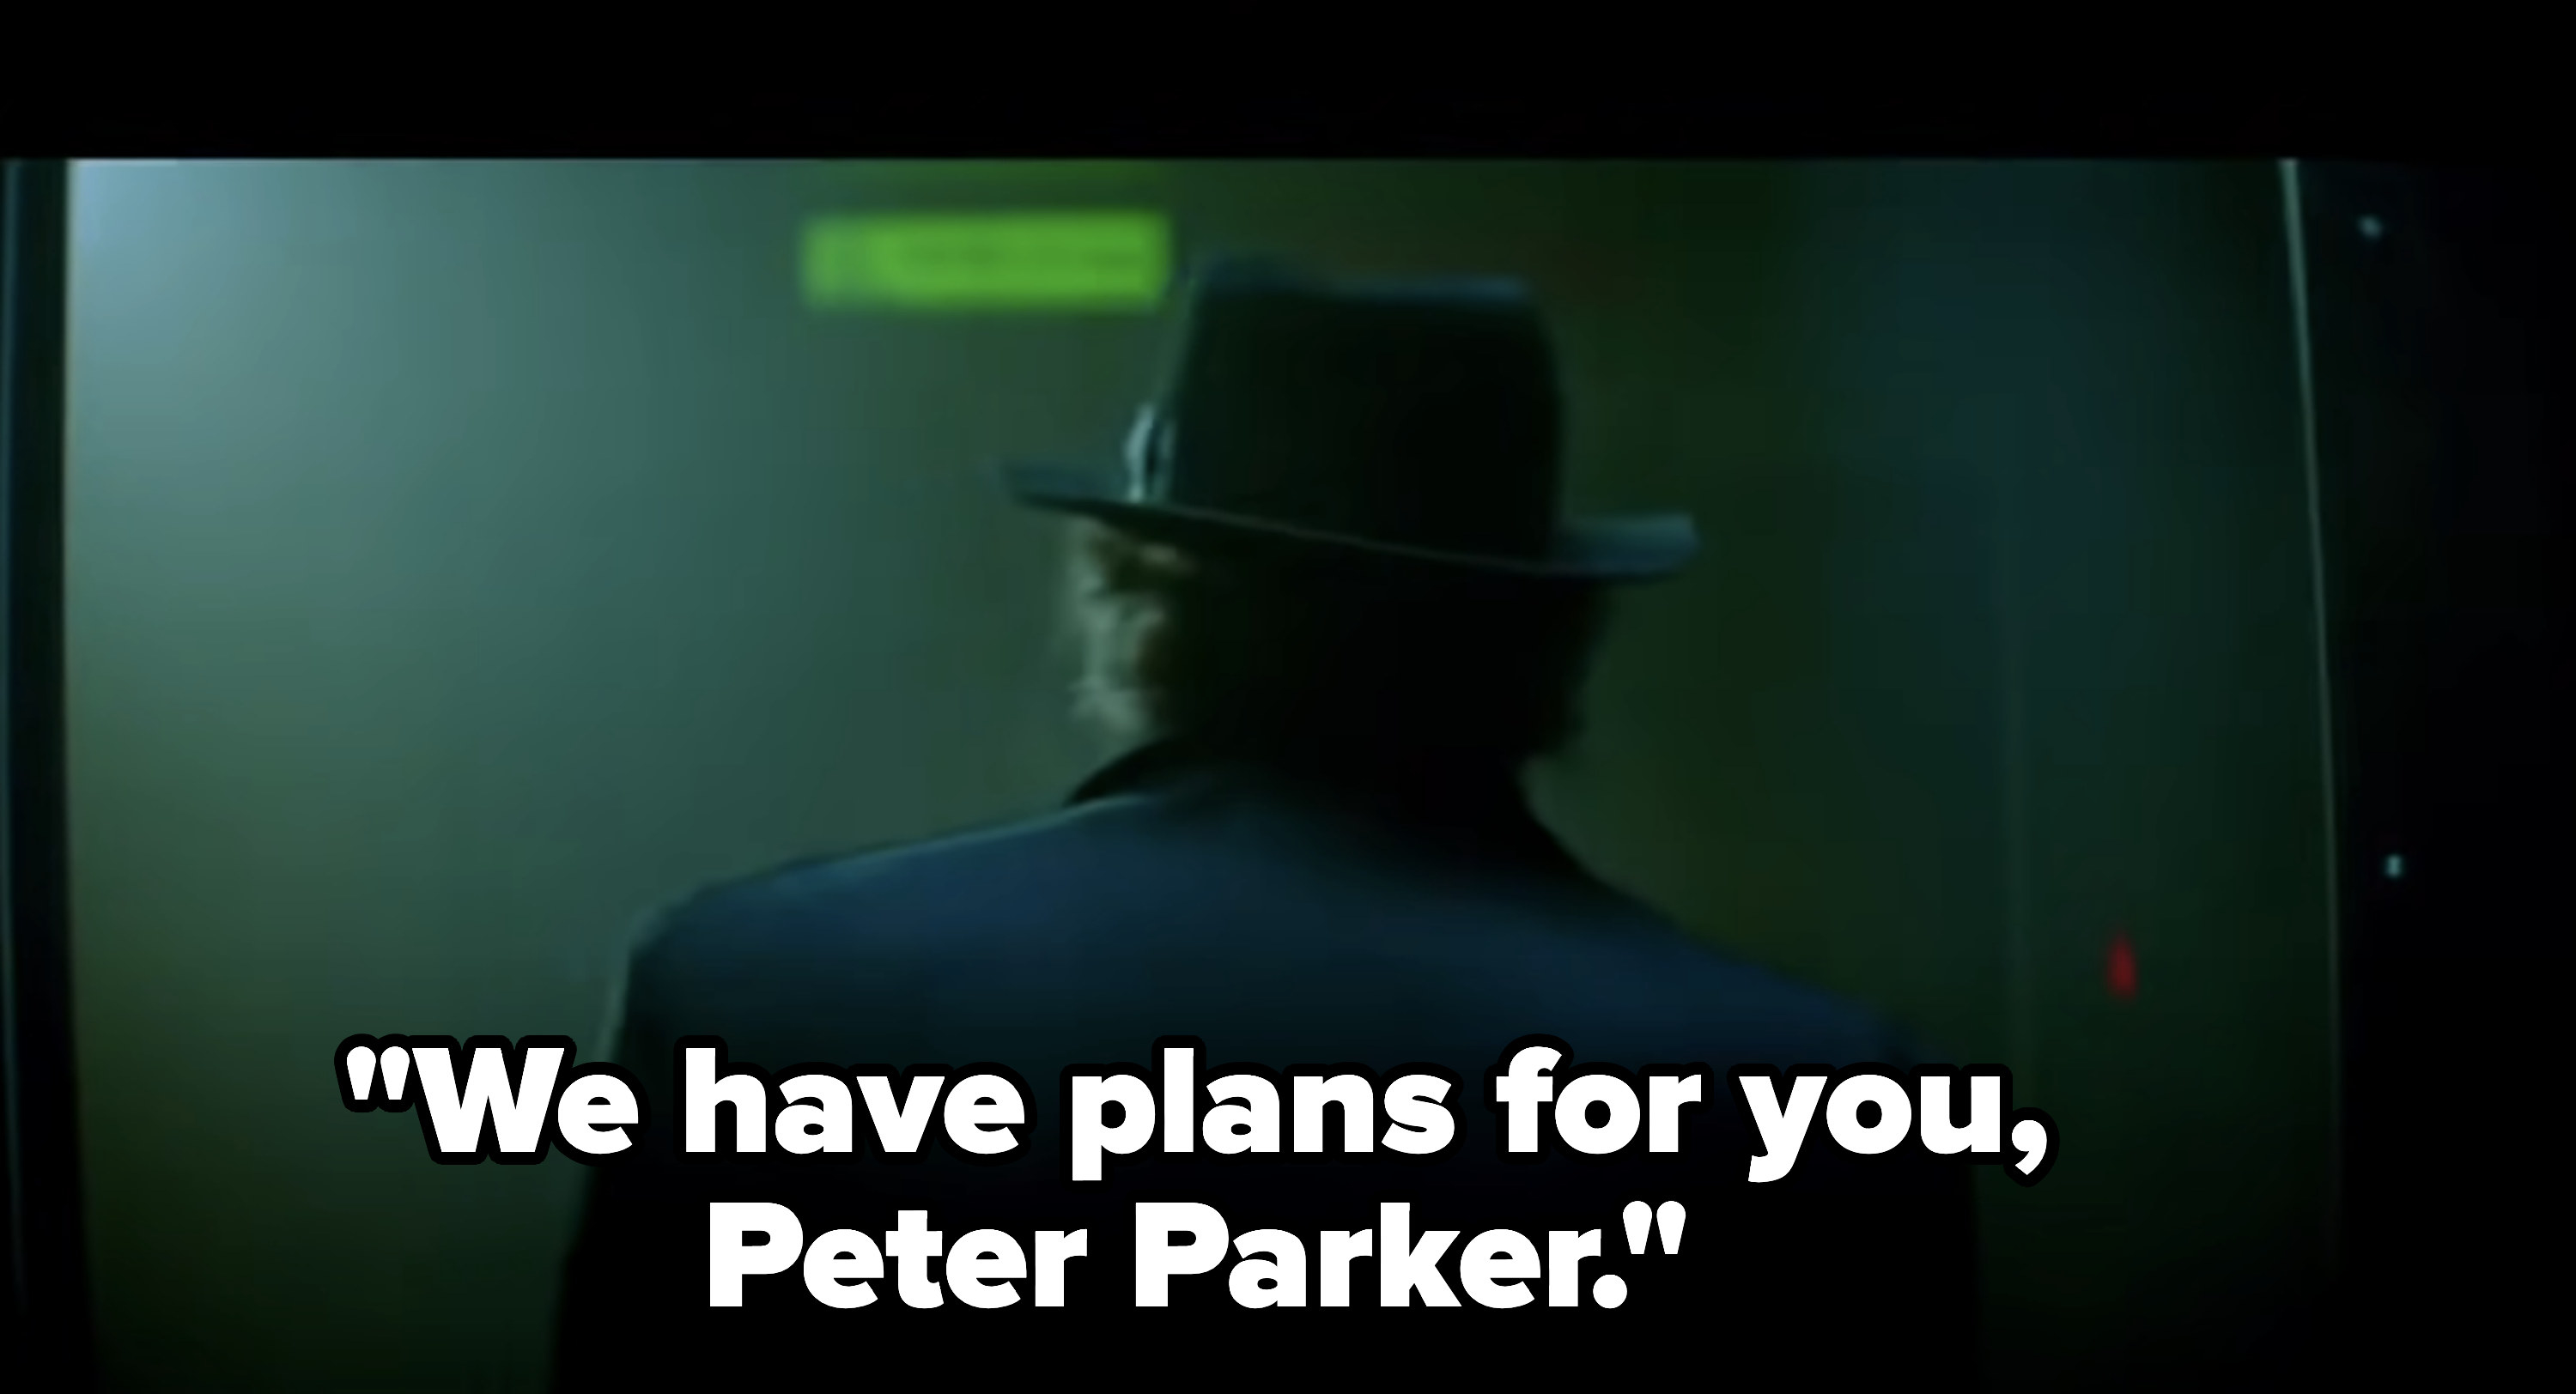 &quot;We have plans for you, Peter Parker&quot;